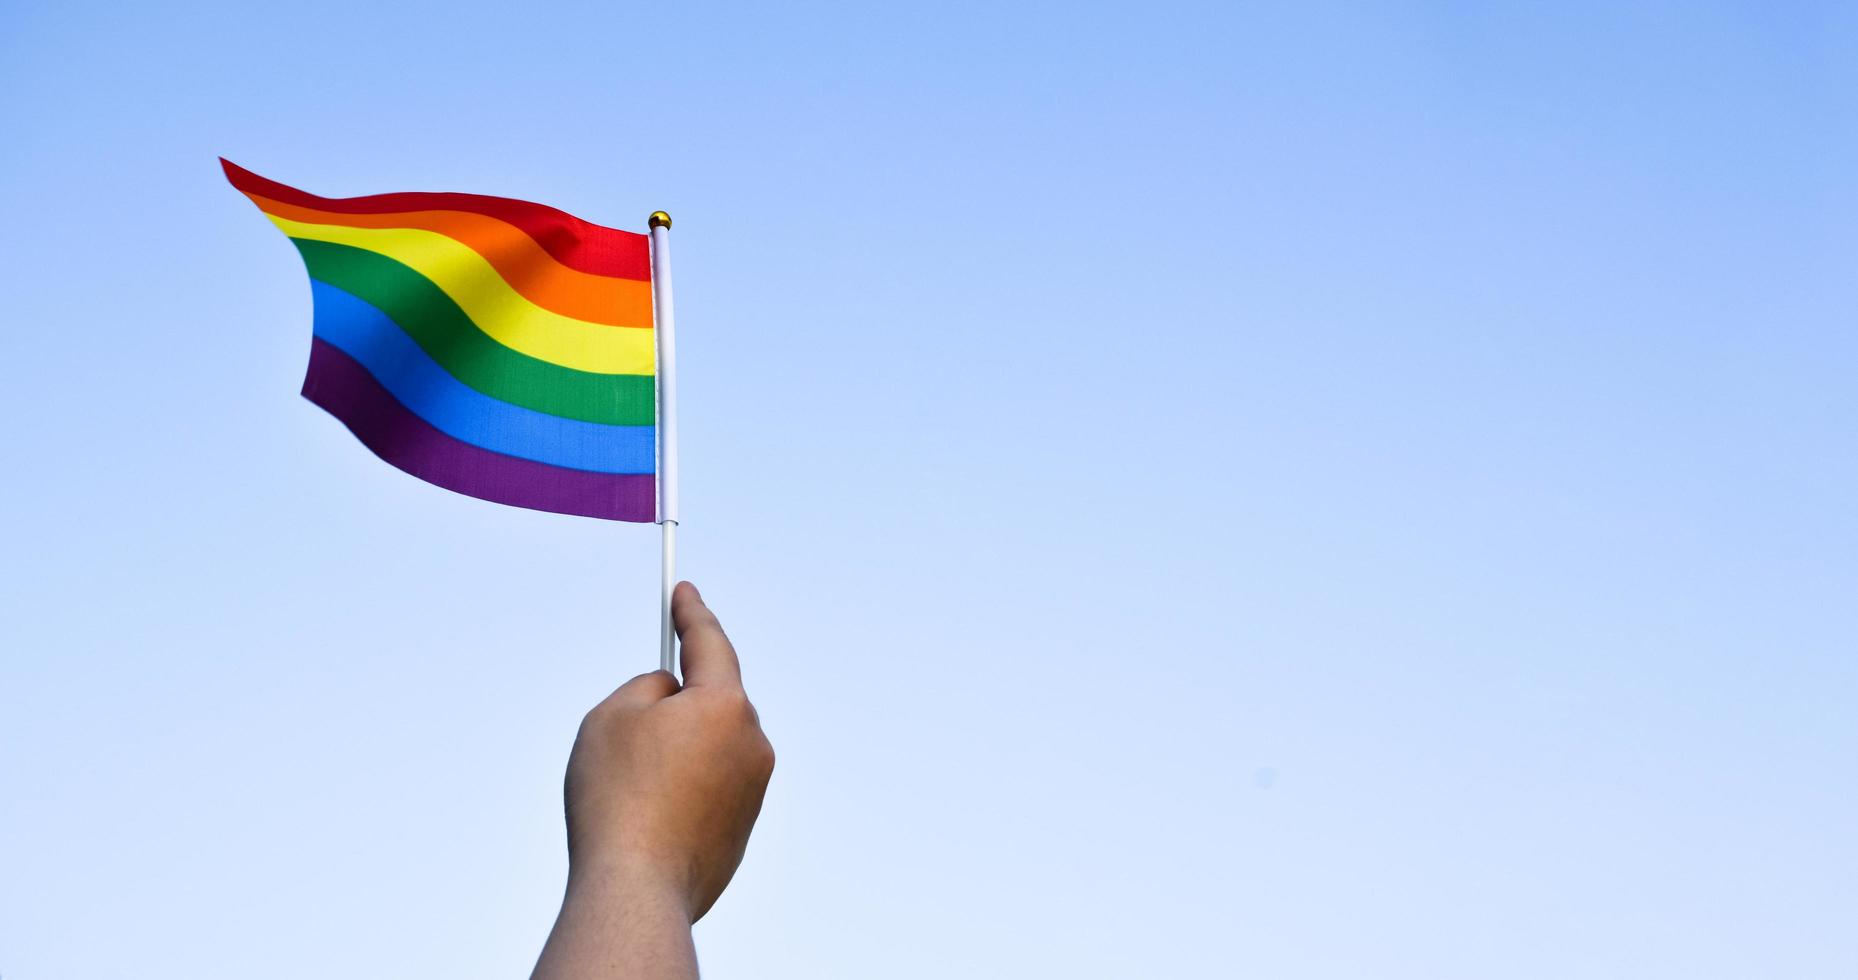 regnbågsflagga, en symbol för hbt-gemenskapen, vinkar i vinden med oskärpa asiatiska studenter i bakgrunden för morgonaktiviteter. koncept för att stödja och driva kampanj för hbt-samhällen i skolan foto